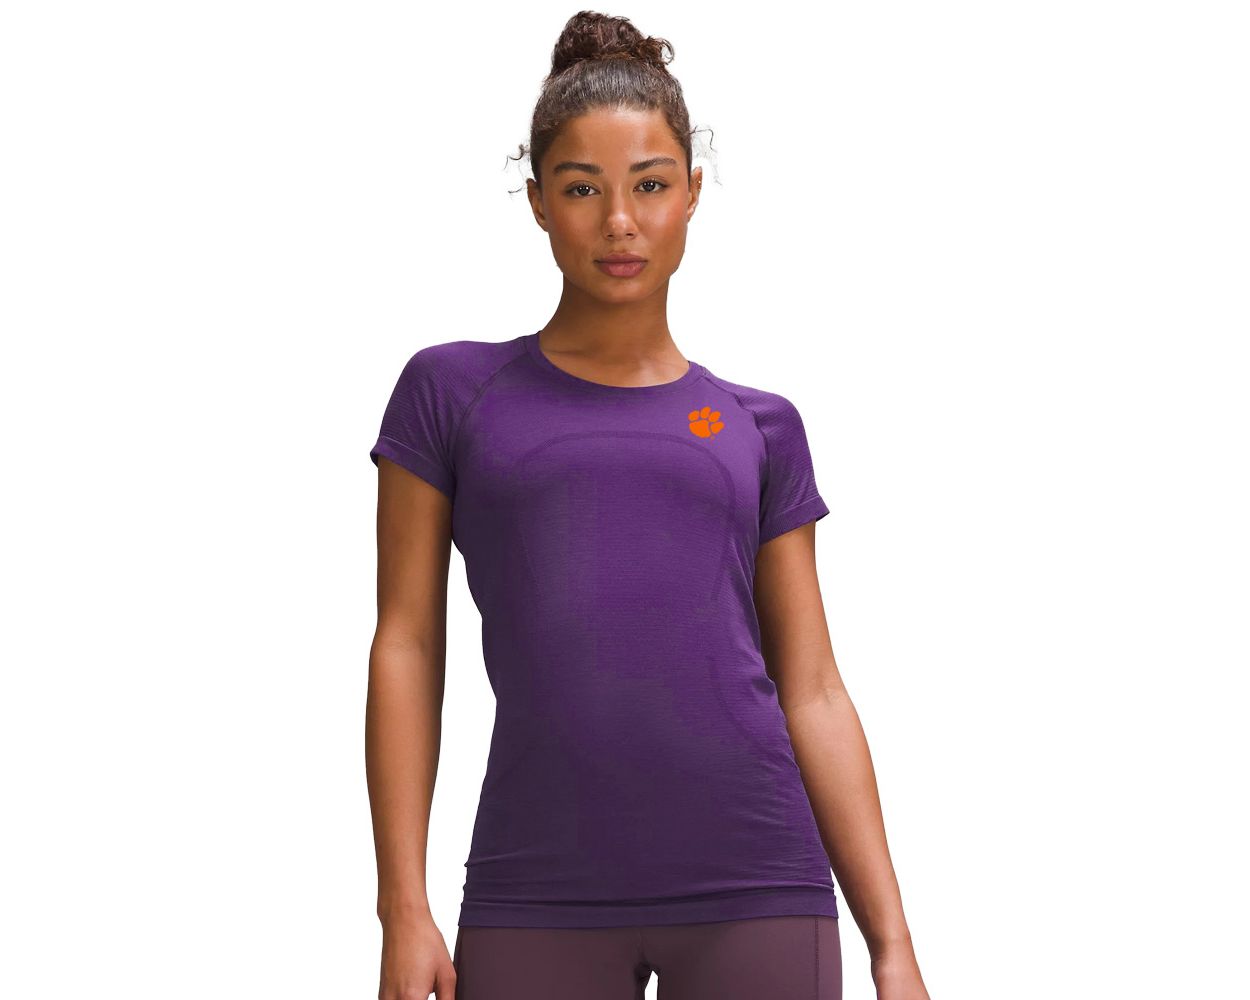 Clemson lululemon Women's Swiftly Tech Short Sleeve Shirt 2.0